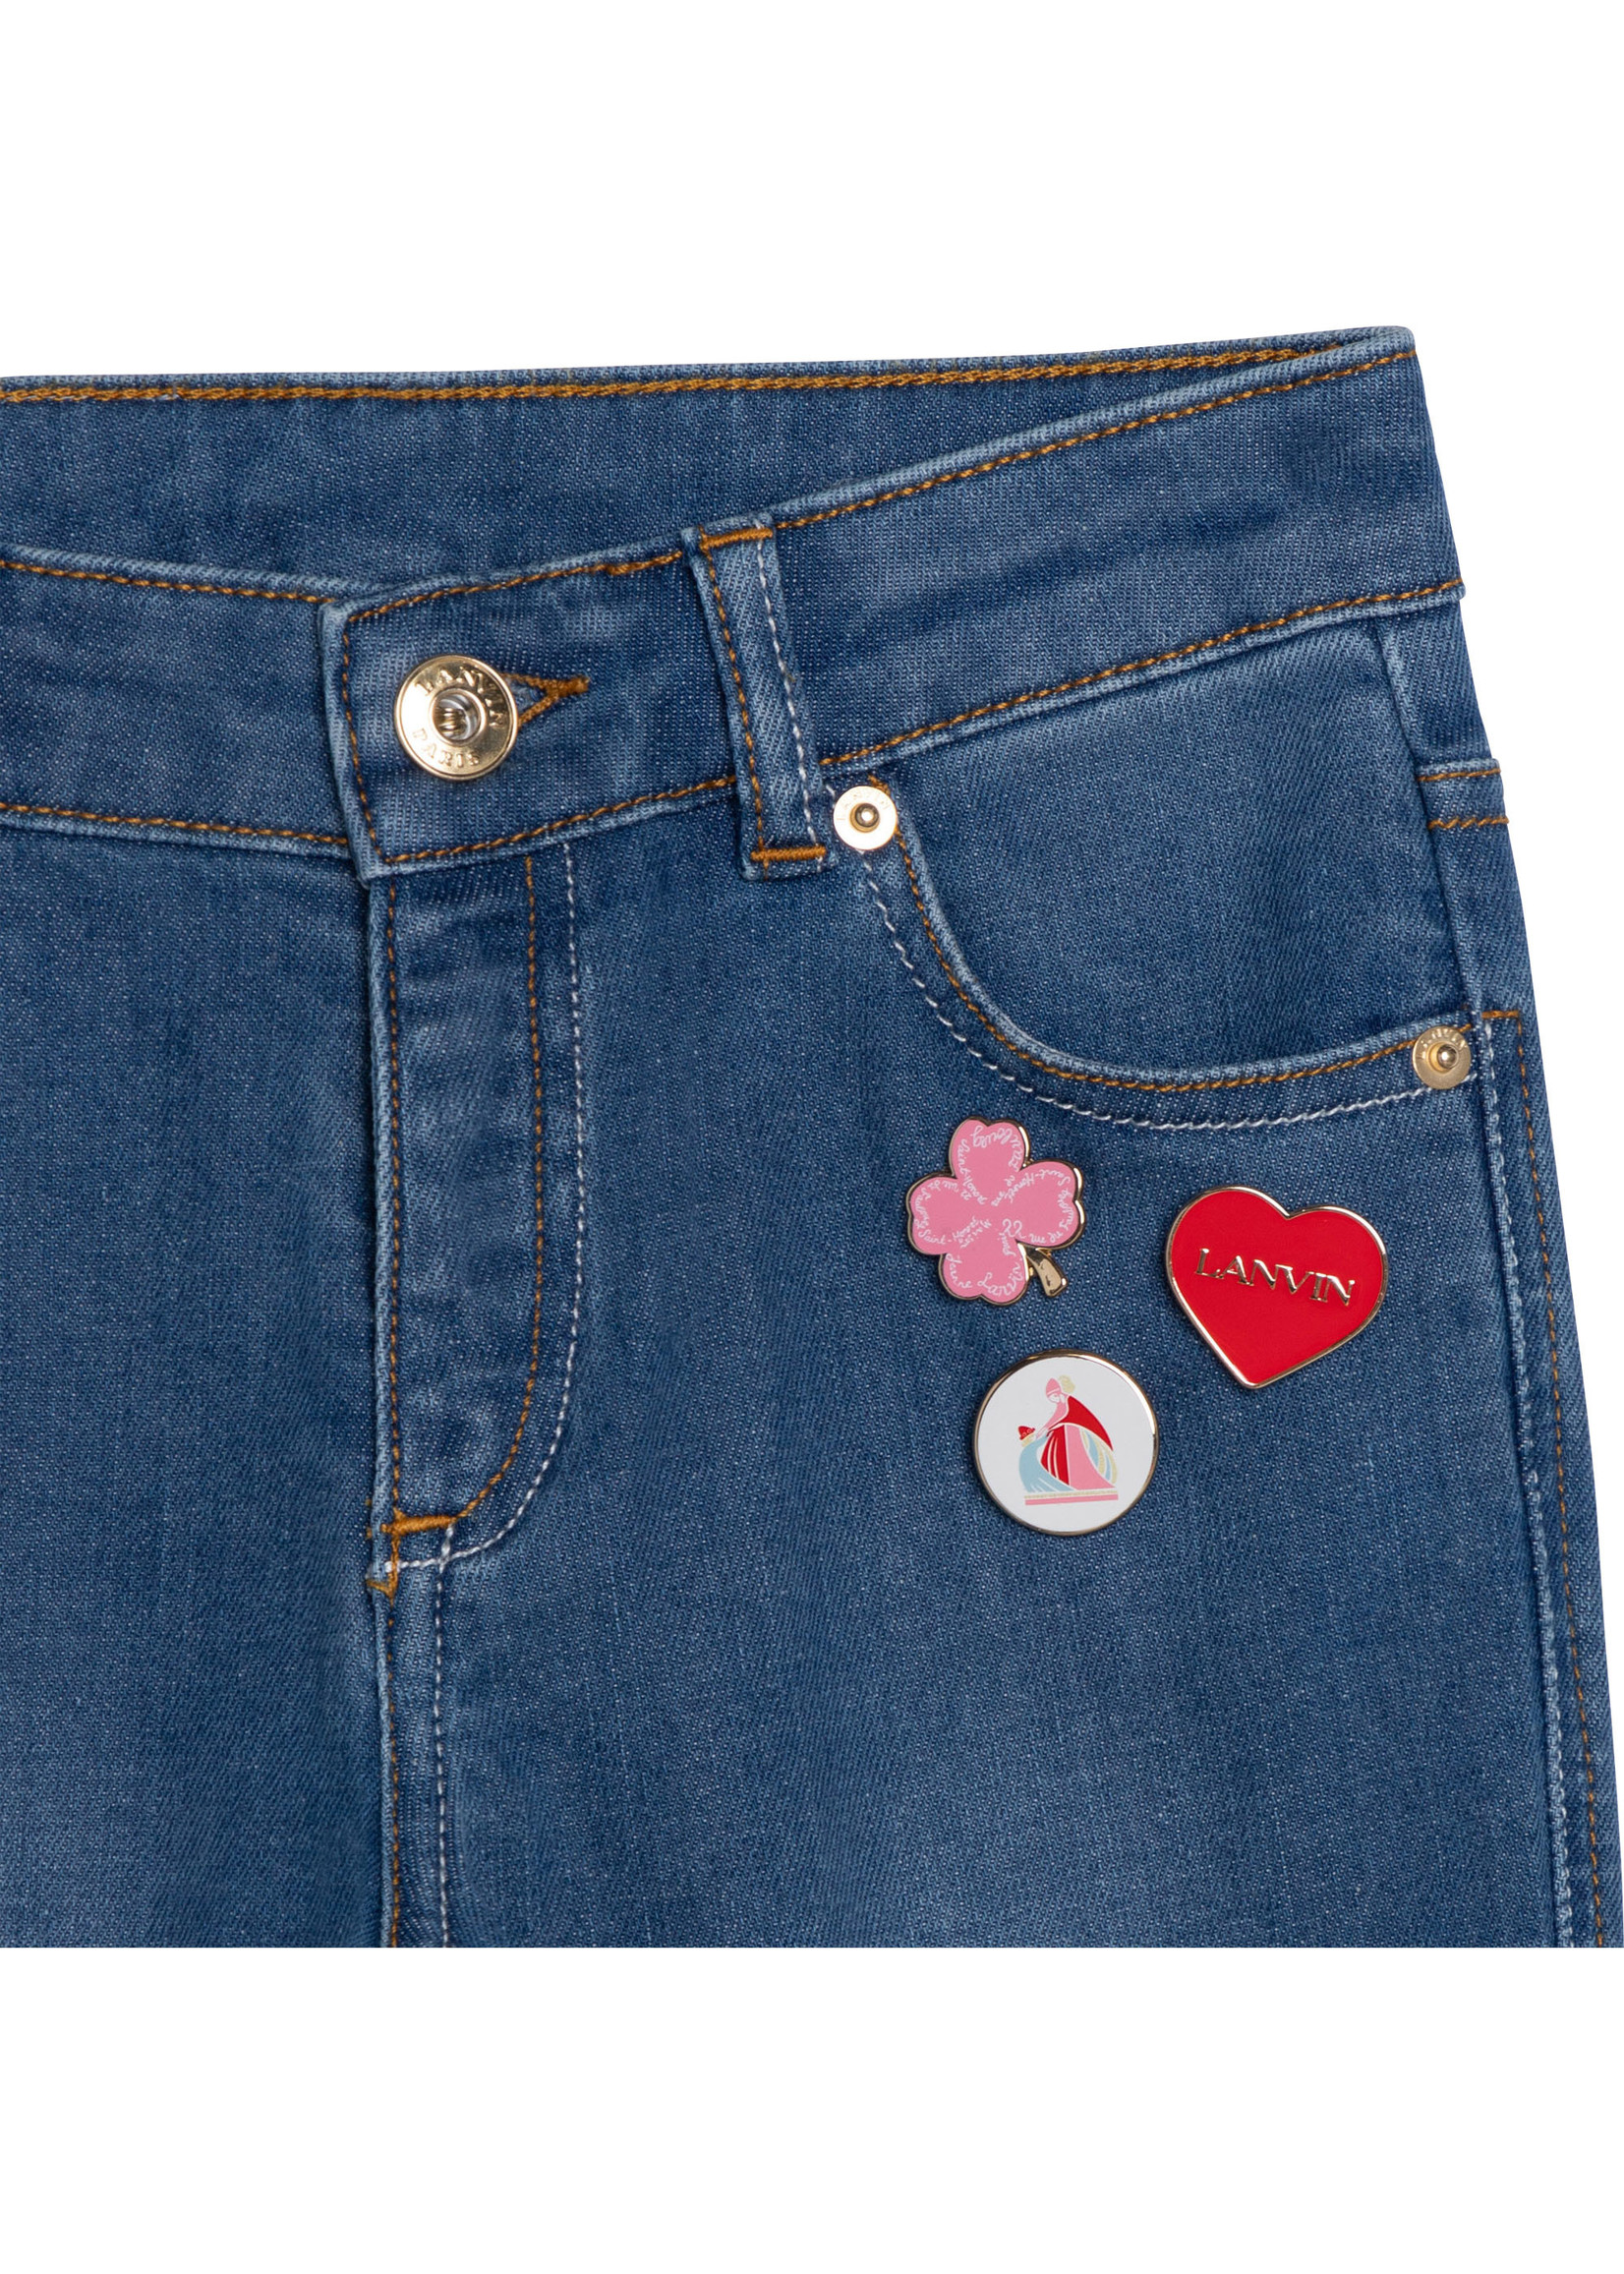 Lanvin LANVIN jeans patches - N14021